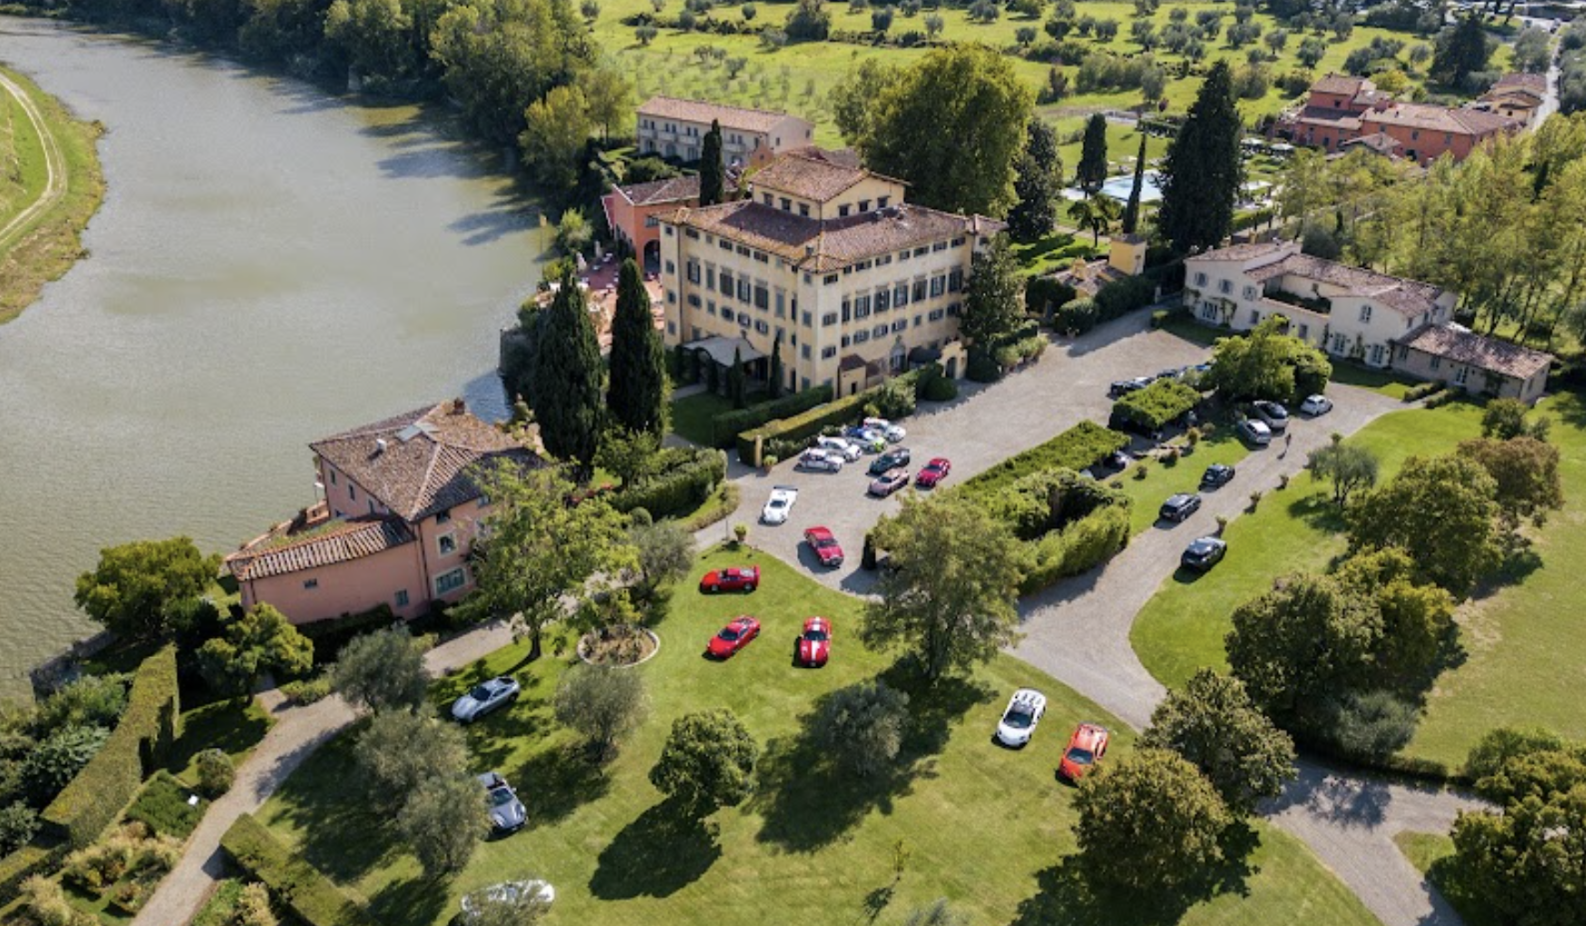 Villa La Massa Excellence: Tuscany hotel launches new supercar event